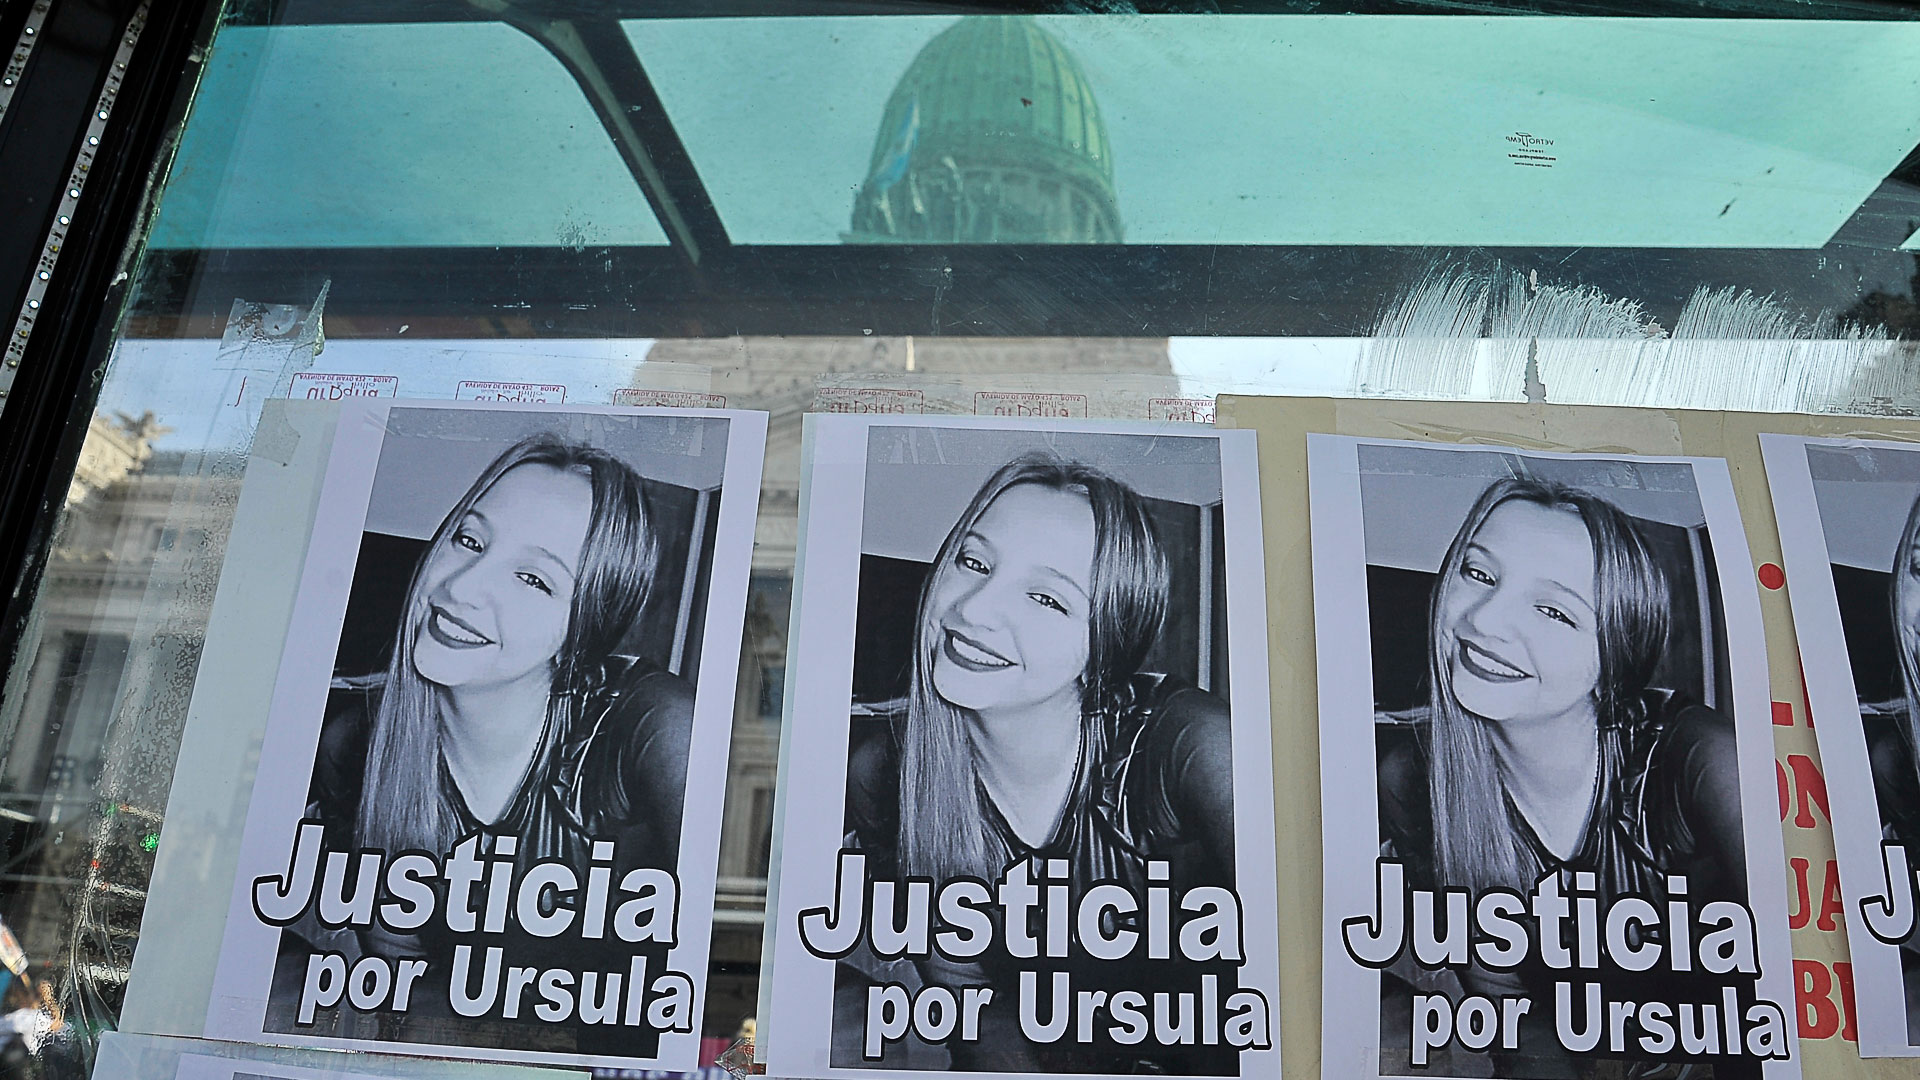 Las manifestantes pegaron varios folletos en las paredes de la ciudad pidiendo justicia para las víctimas